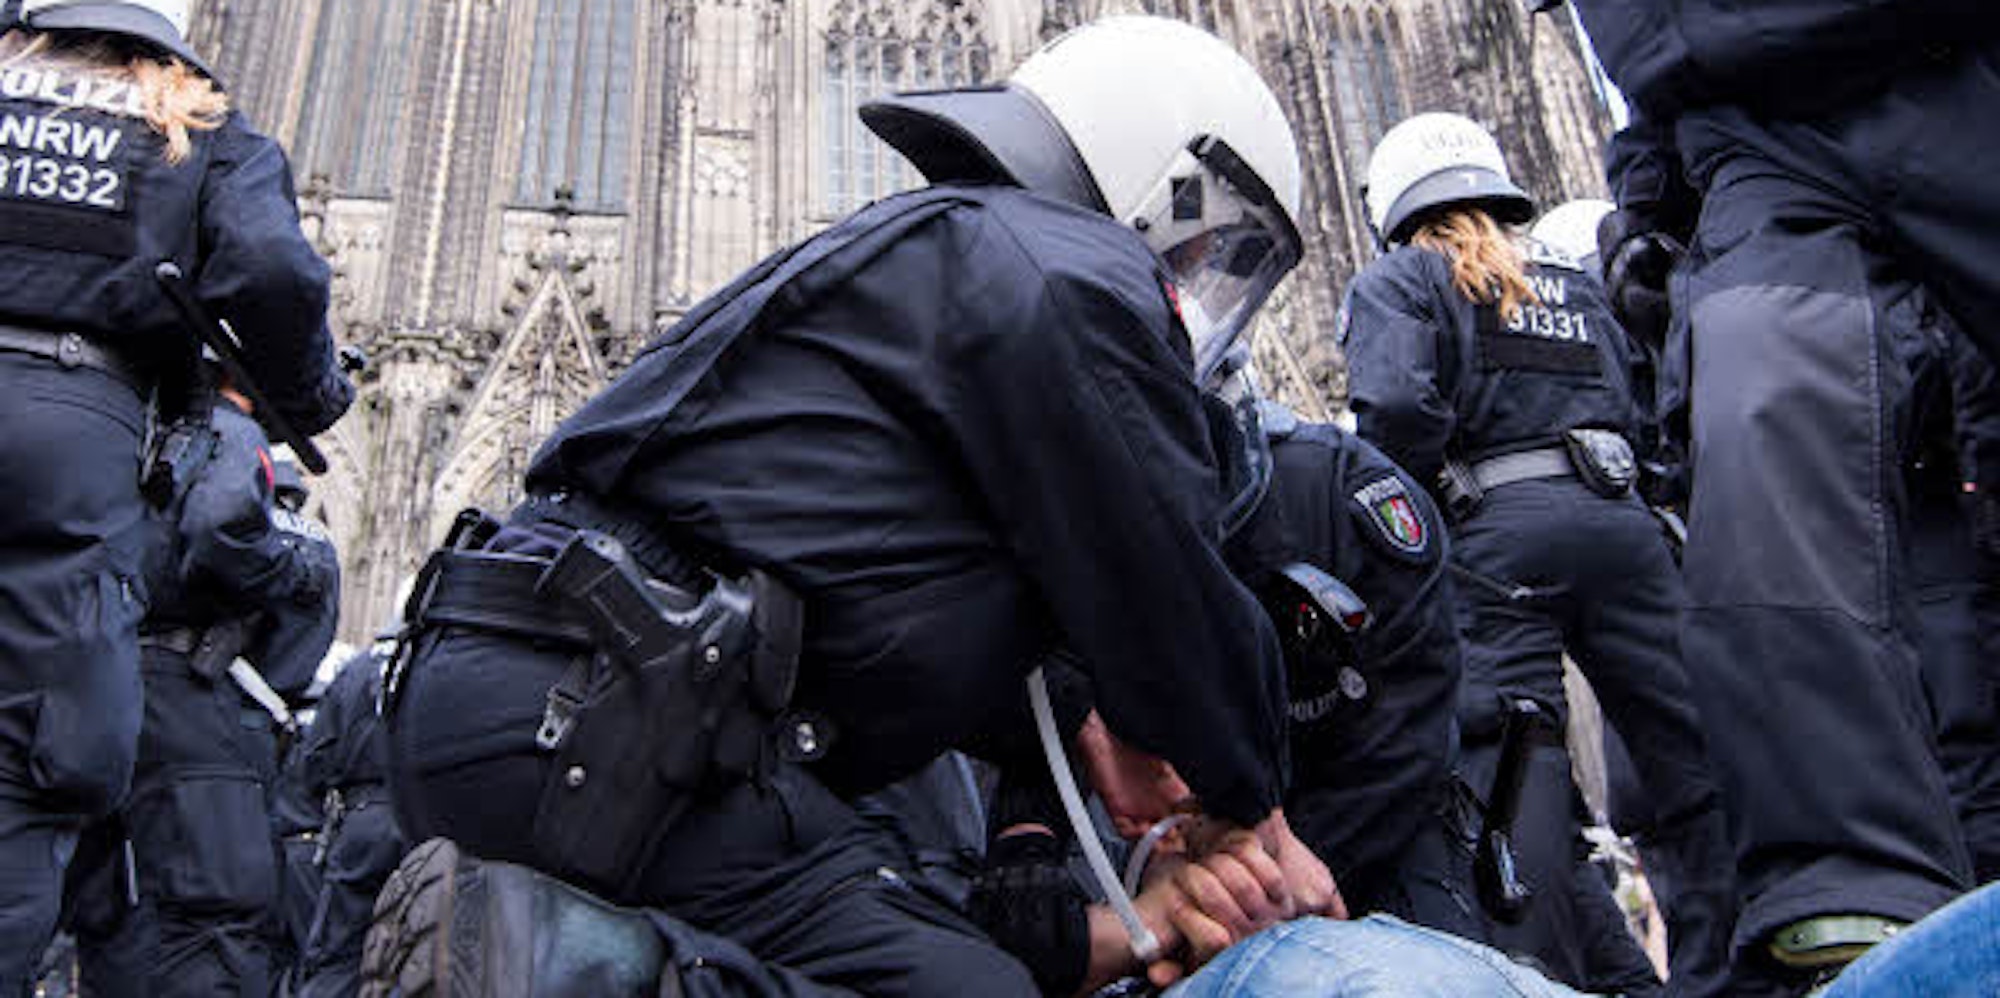 Polizisten nehmen in Köln einen Mann fest. (Archivfoto)